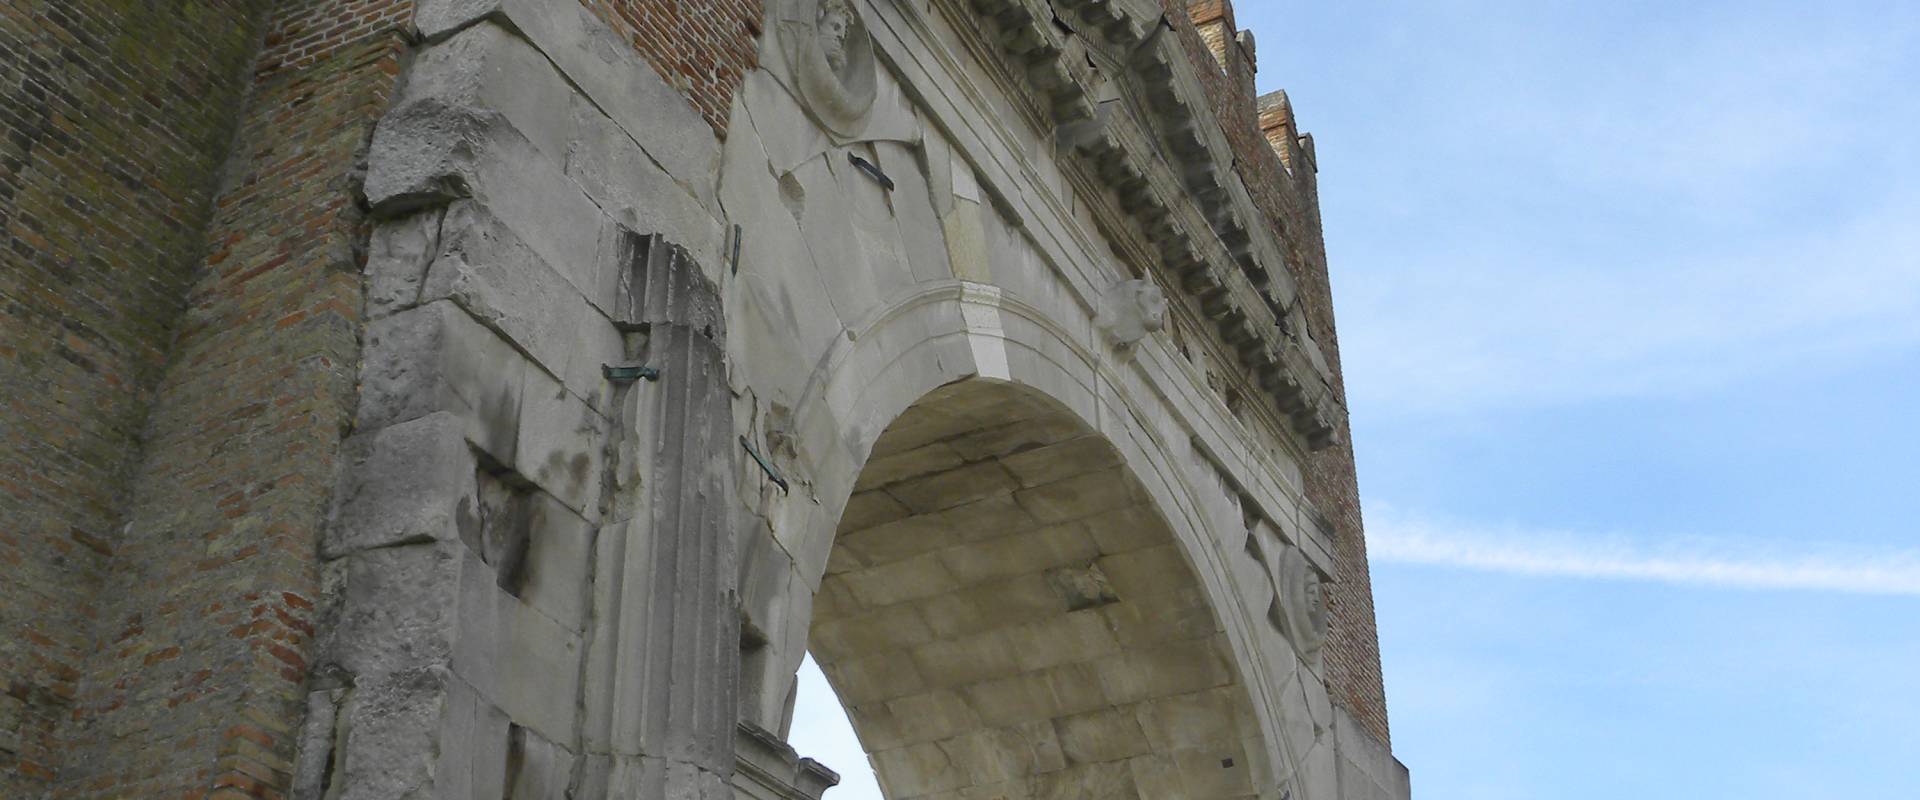 La sfidante ed ETERNA imponenza massiccia dell'Arco IMPERIALE di RIMINI foto di Claudio CASADEI